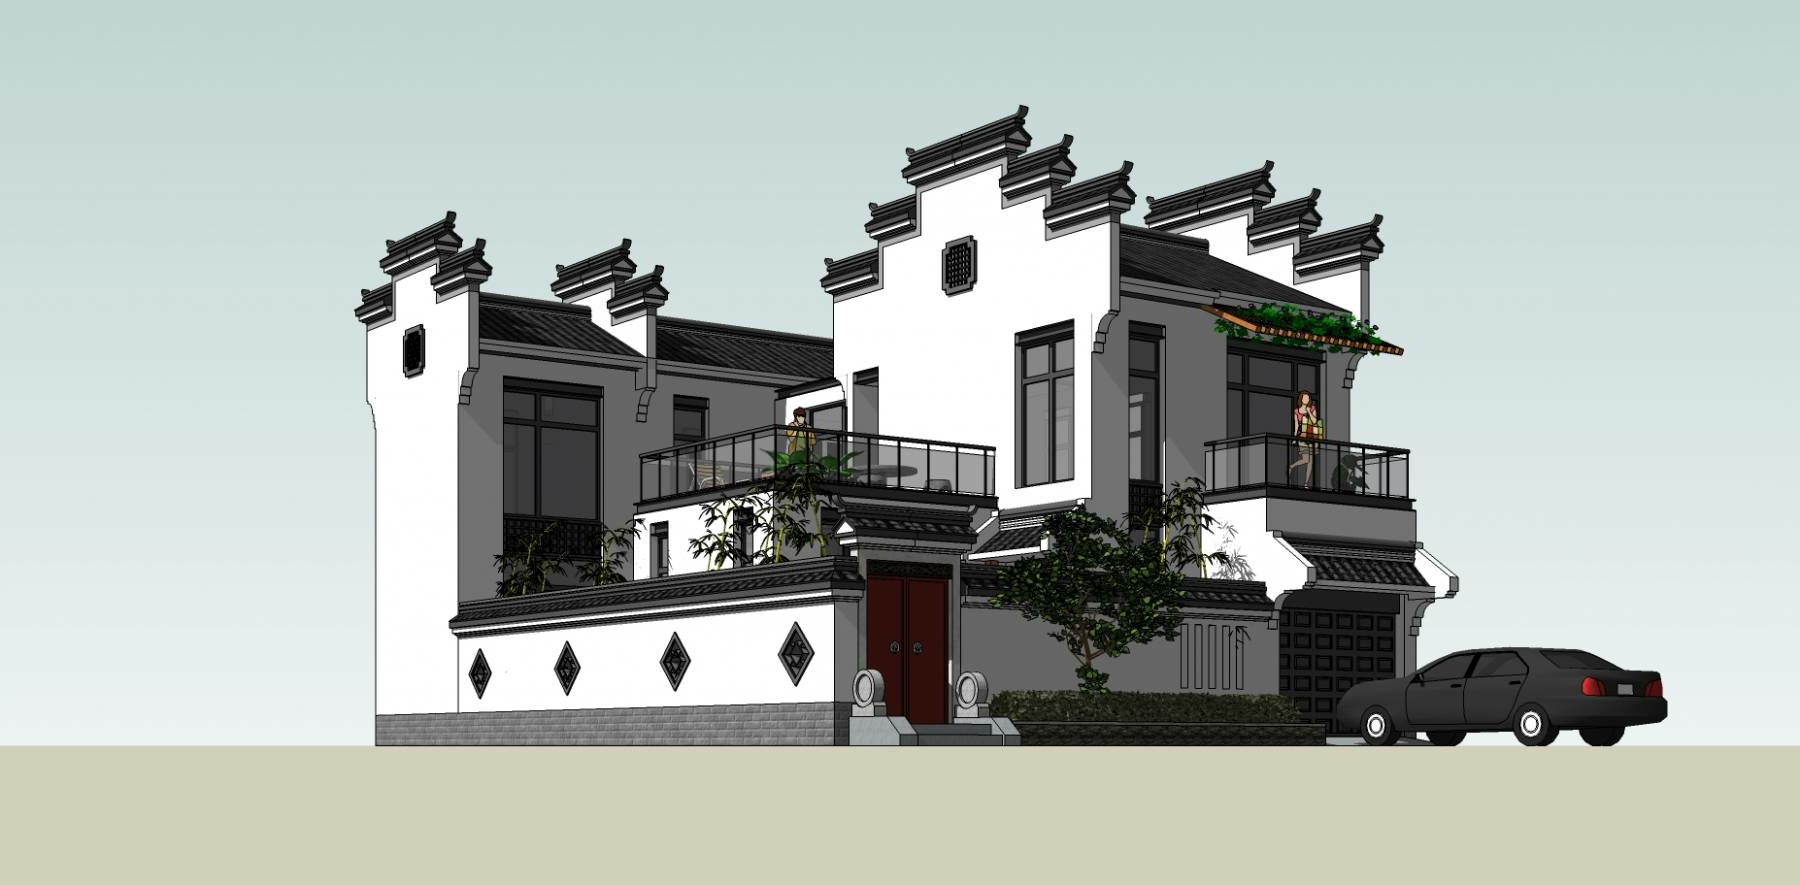 新中式 独栋别墅sketchup模型下载-编号353368 SketchUp建筑模型下载 第1张